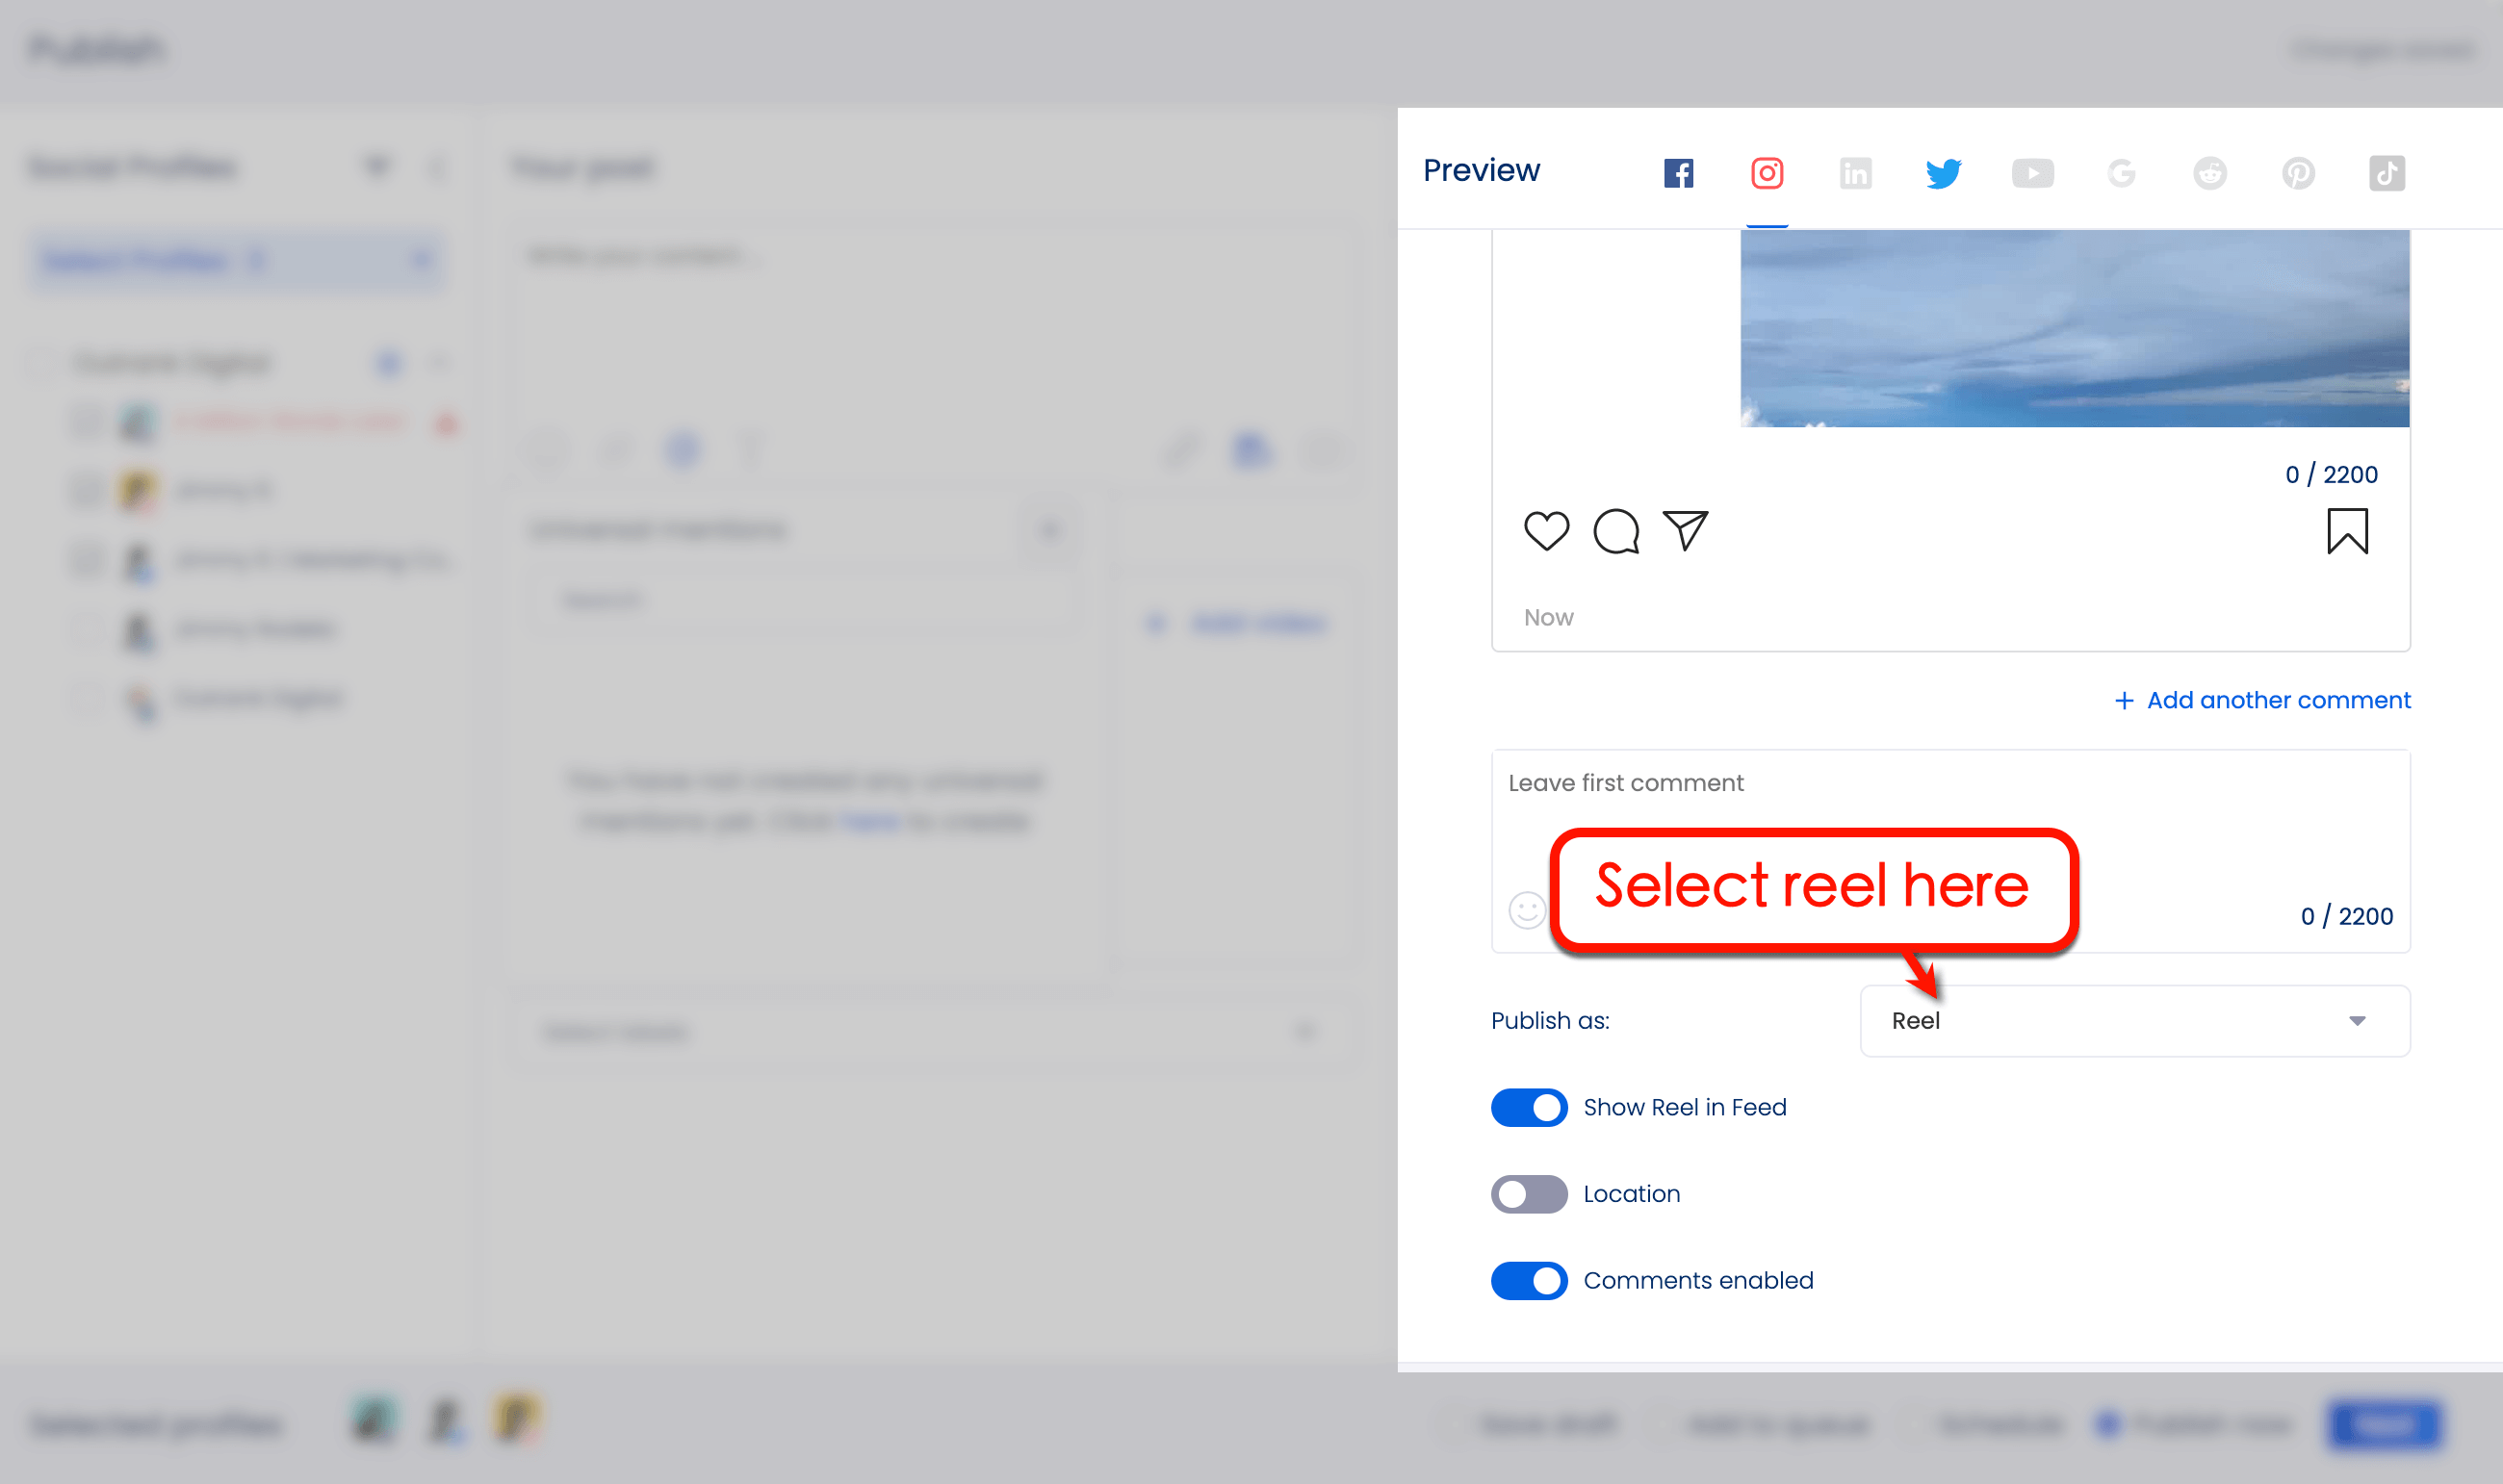 Select reel